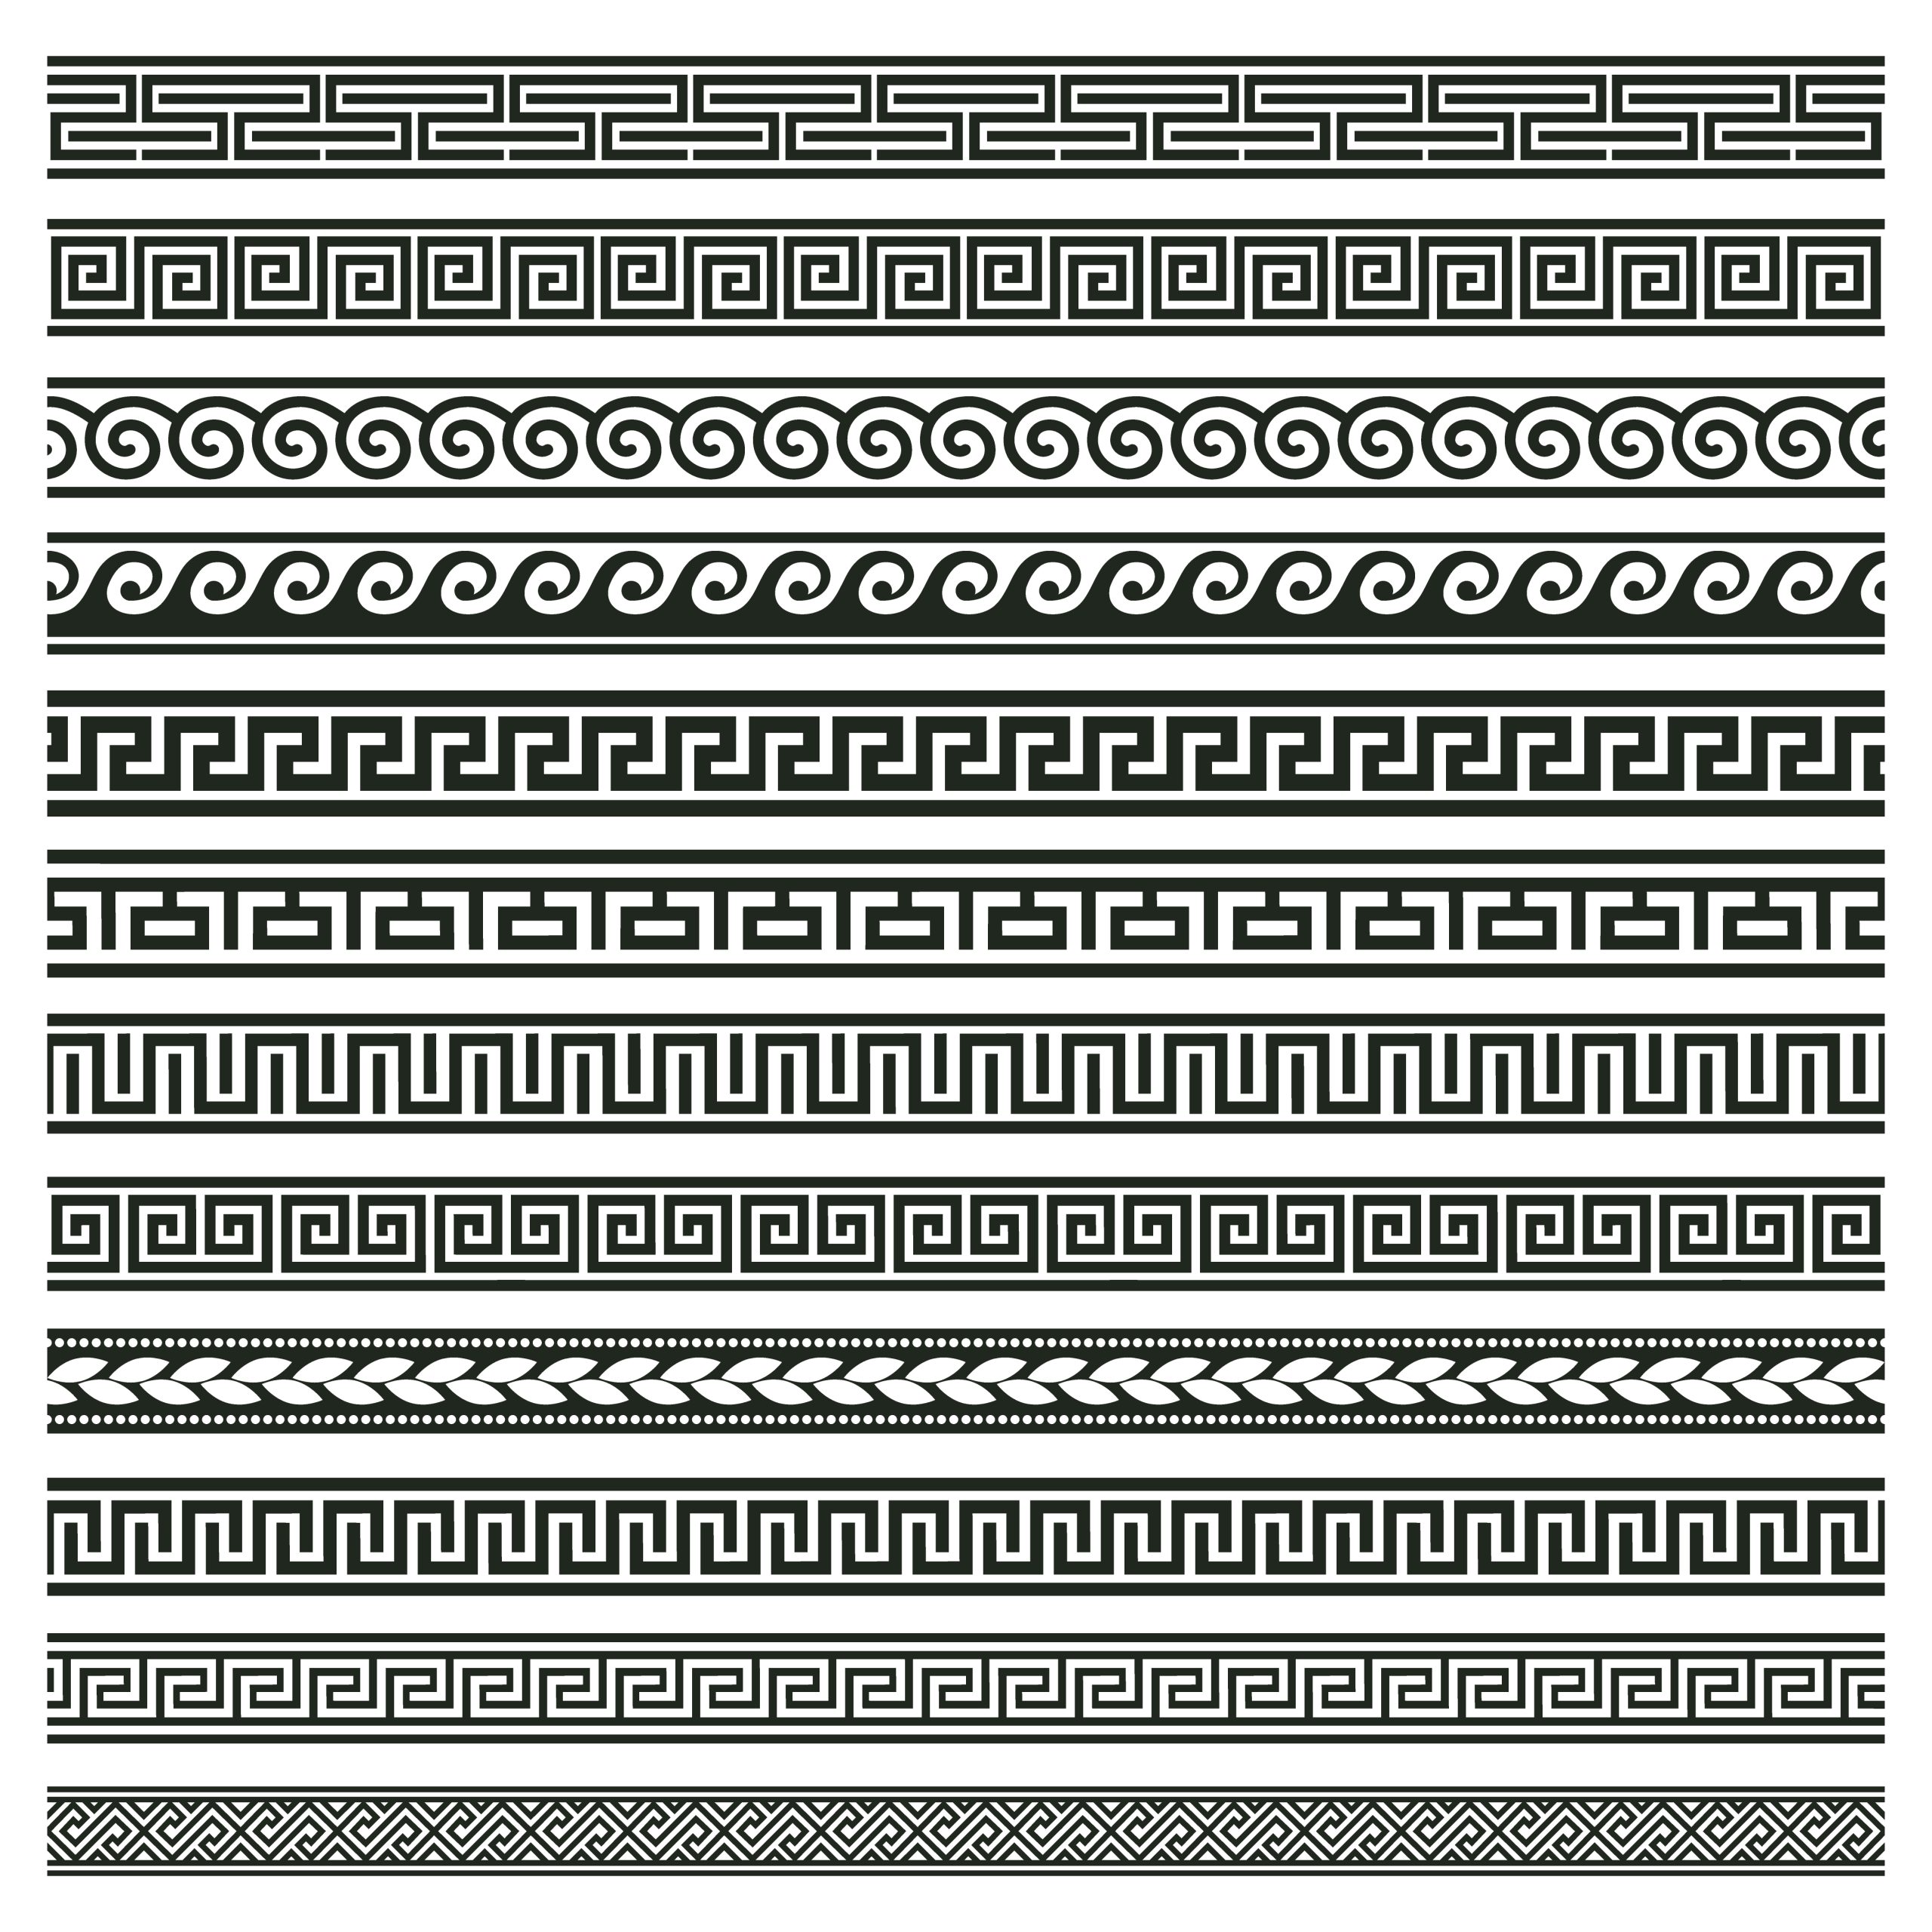 دانلود مجموعه ۱۲ عددی براش فوتوشاپ طرح حاشیه رومی